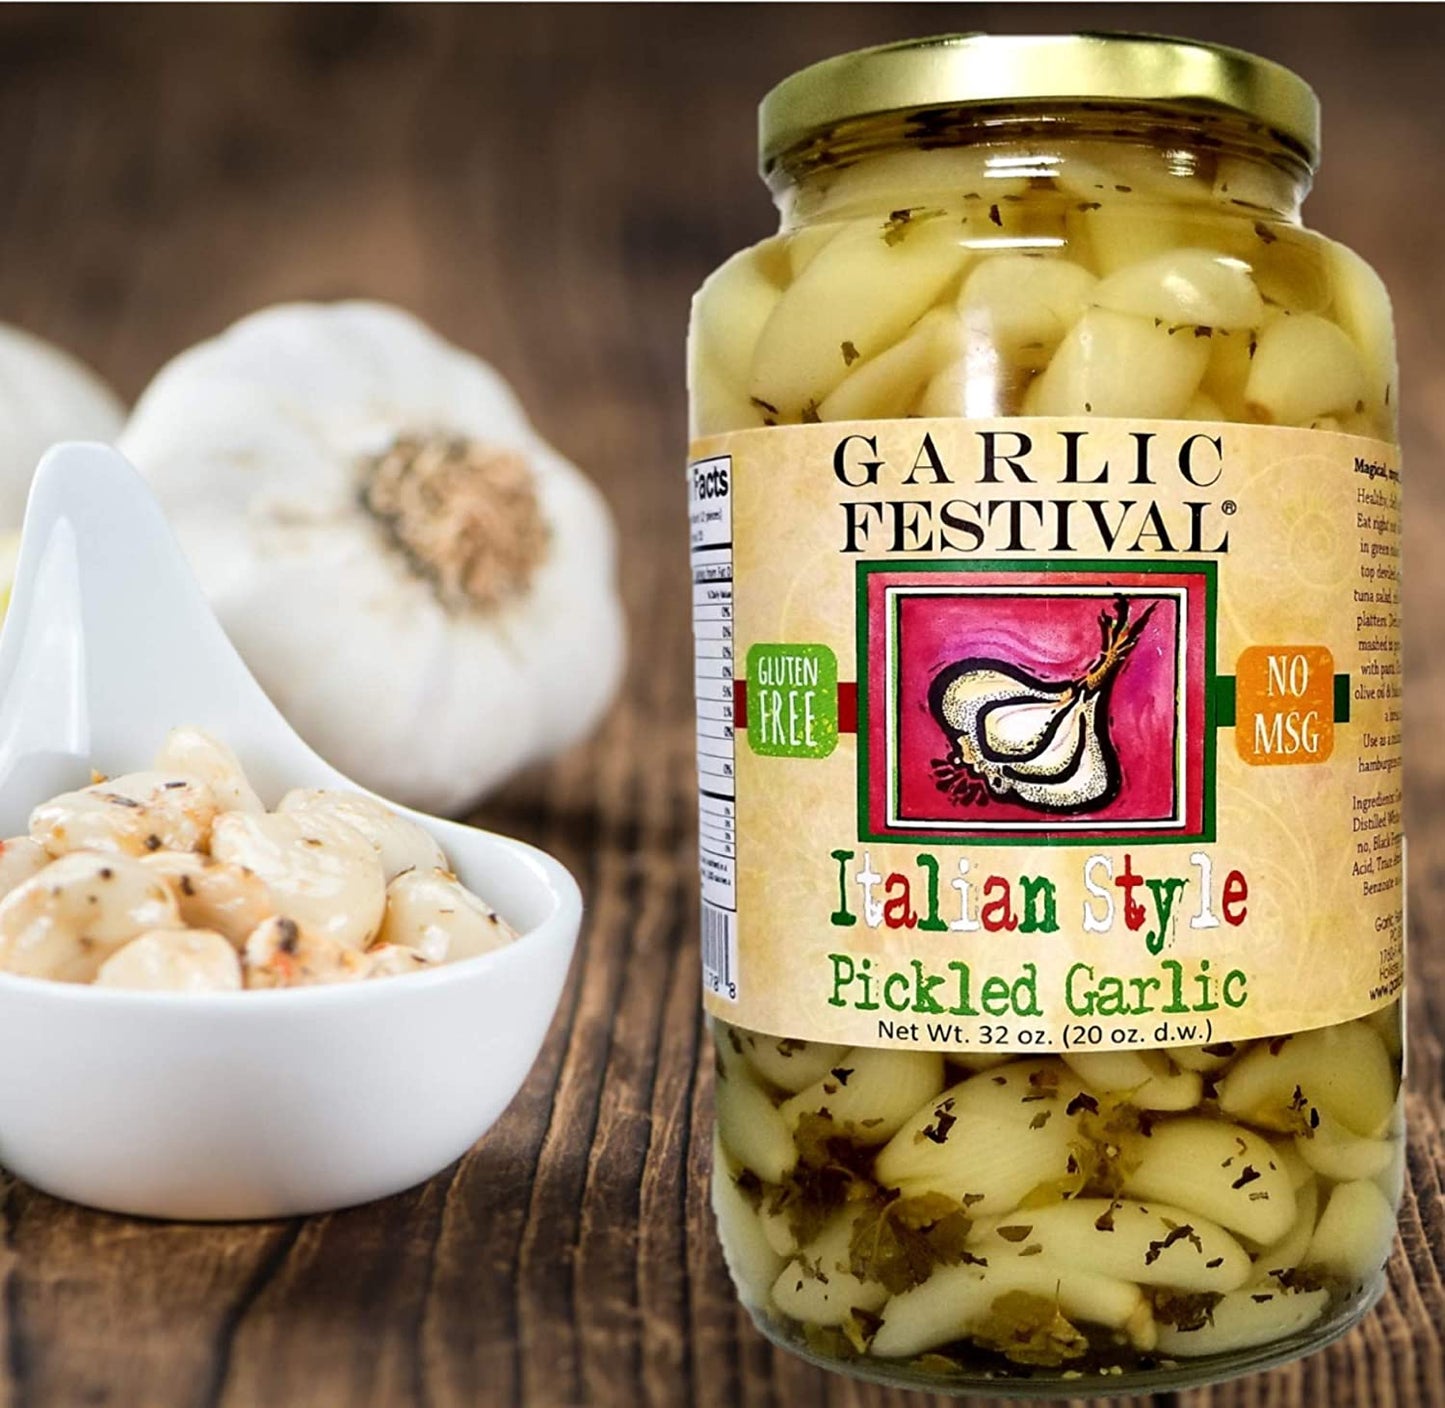 Pickled Garlic Italian Style Garlic Festival 32 oz $22.98